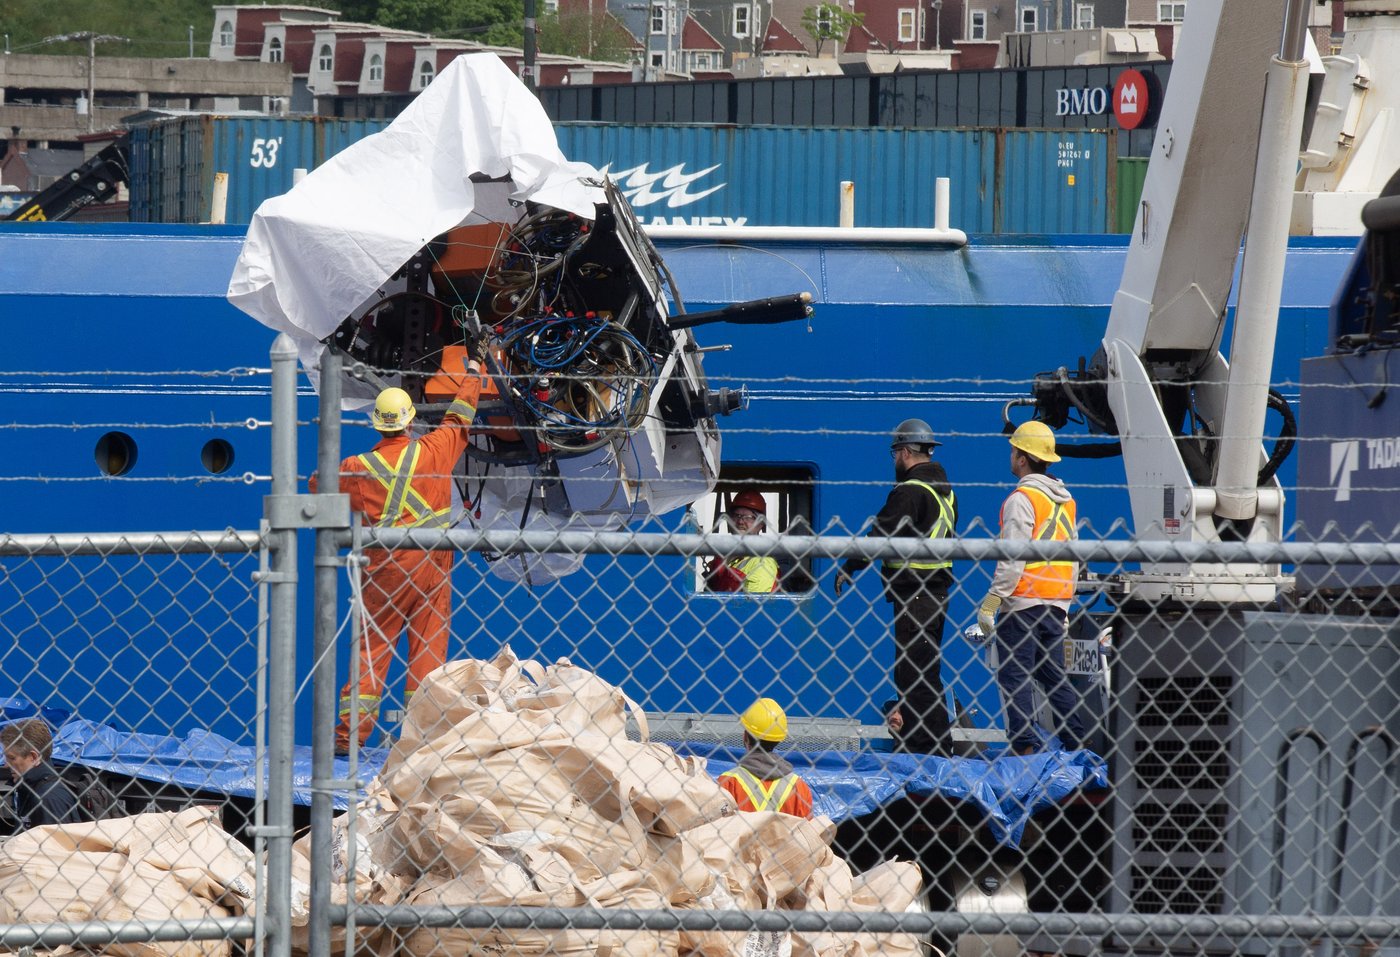 Le BST affirme que d’autres submersibles non immatriculés plongent toujours au Canada